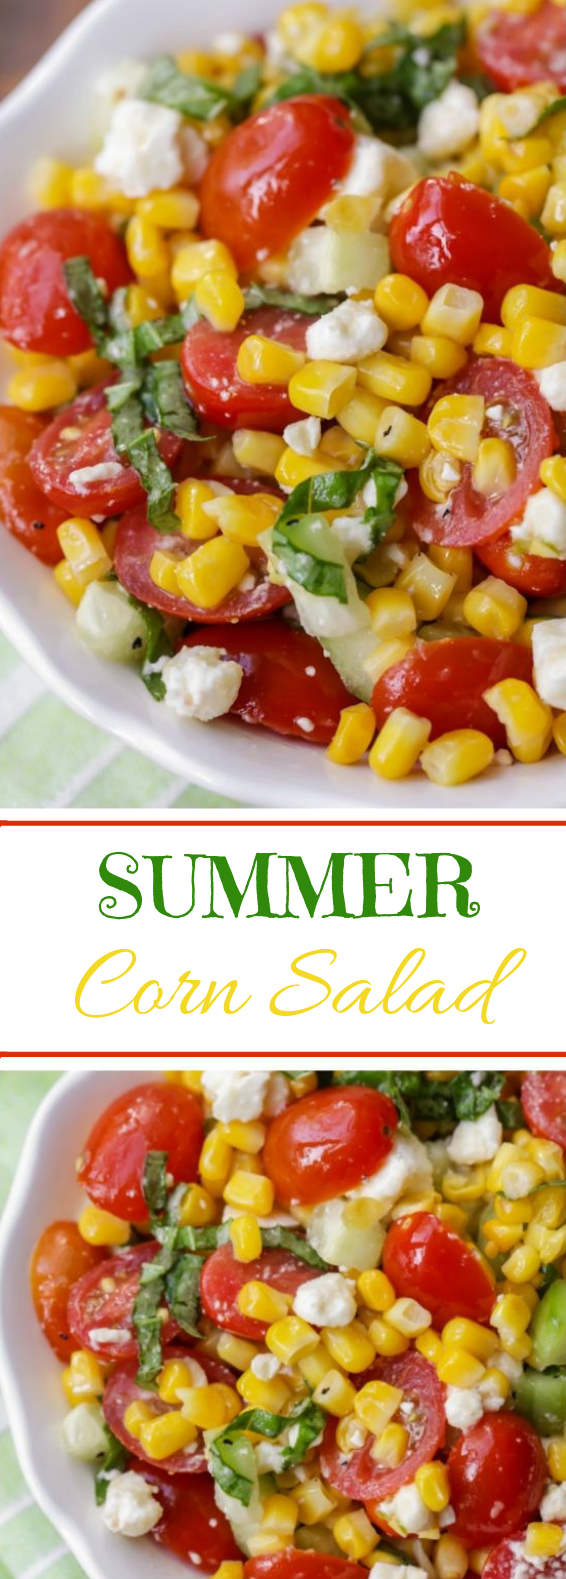 Summer Corn Salad #healthy #salad